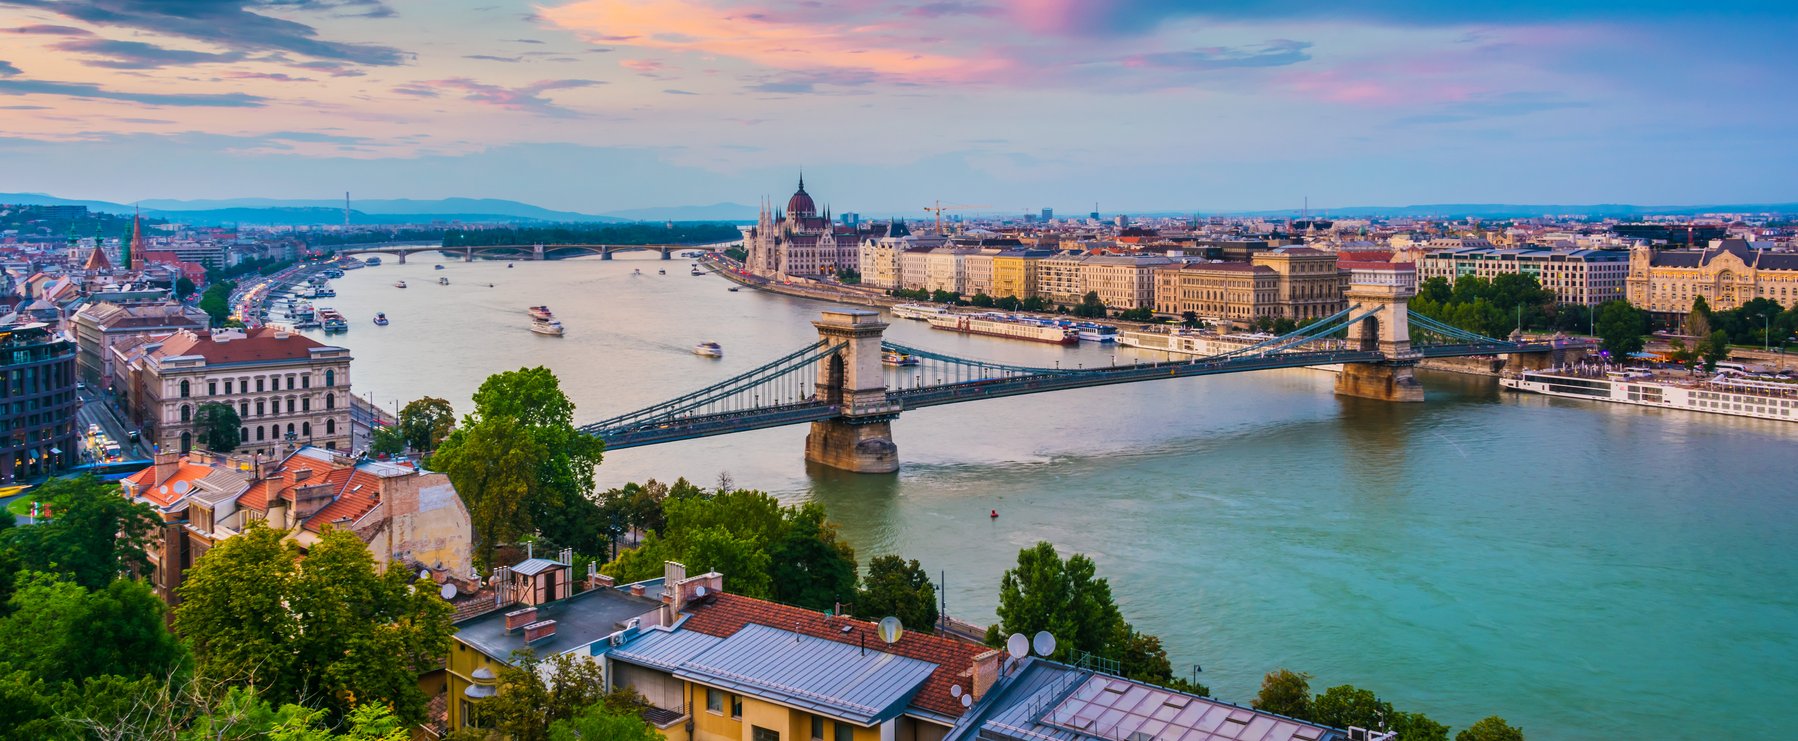 Teljesen más nevet akartak adni Budapestnek, így hívták volna eredetileg a magyar fővárost